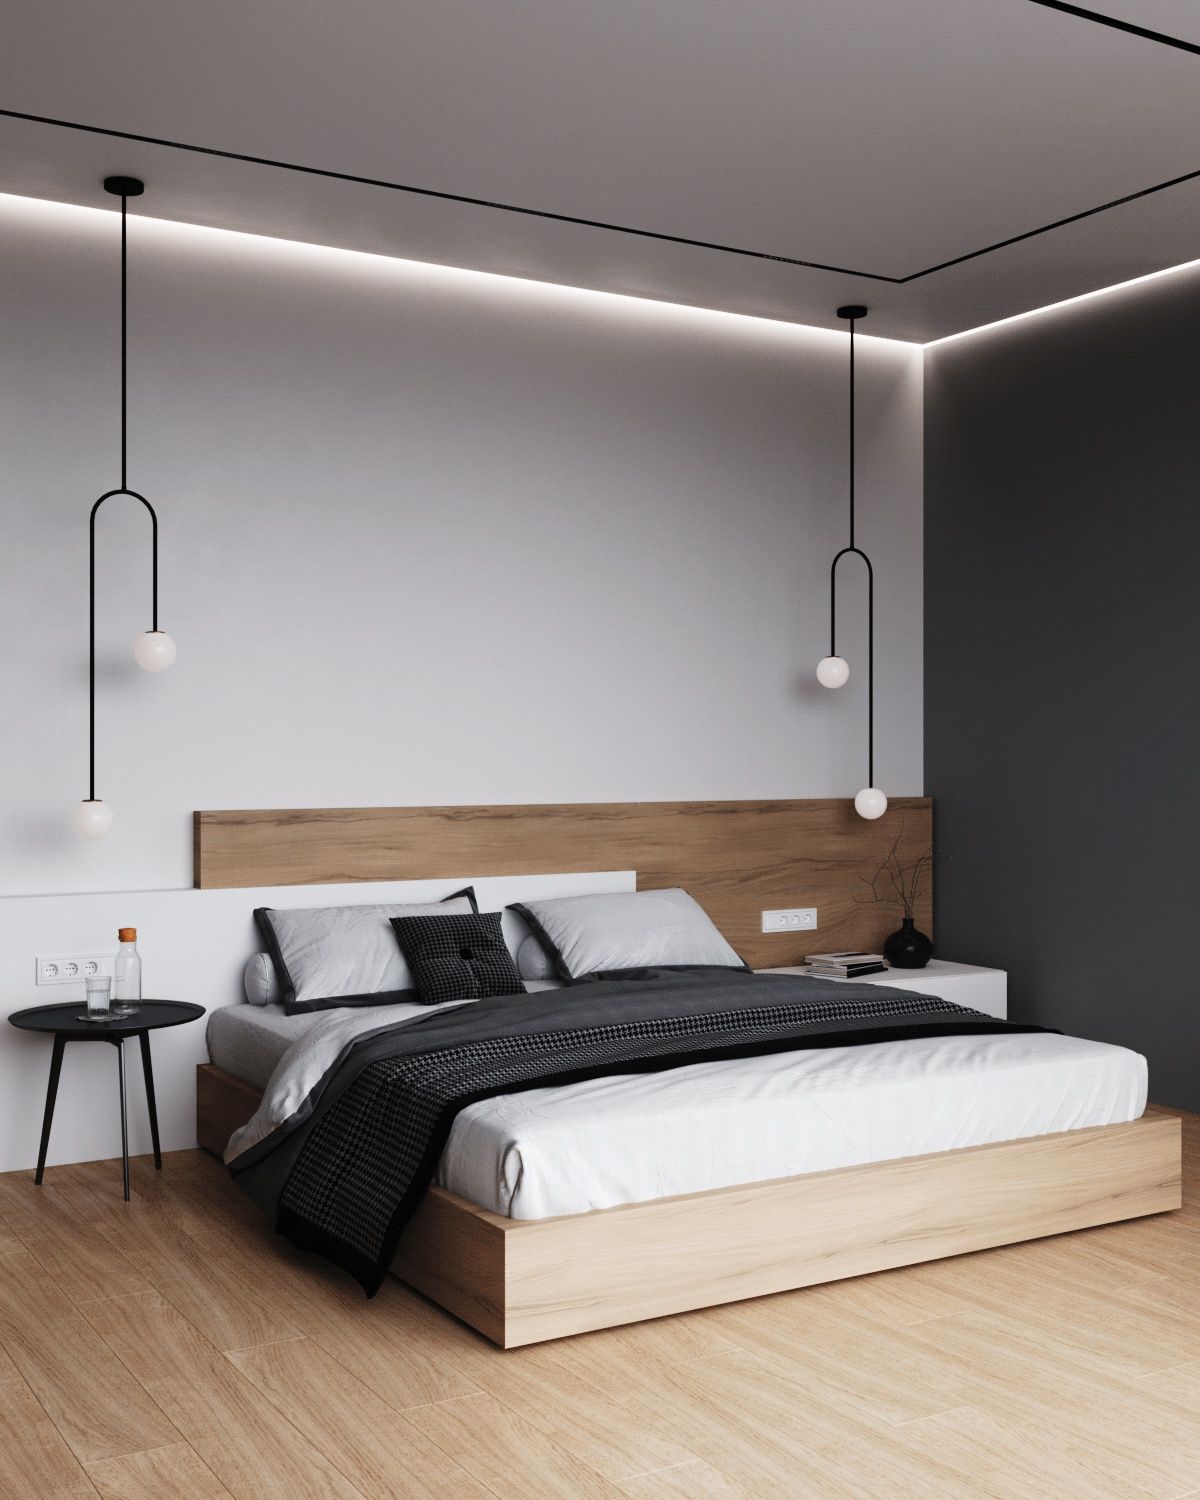 Thiết kế phòng ngủ 16m2 đơn giản với màu trắng chủ đạo lấy điểm nhấn là đèn thả hai bên giường